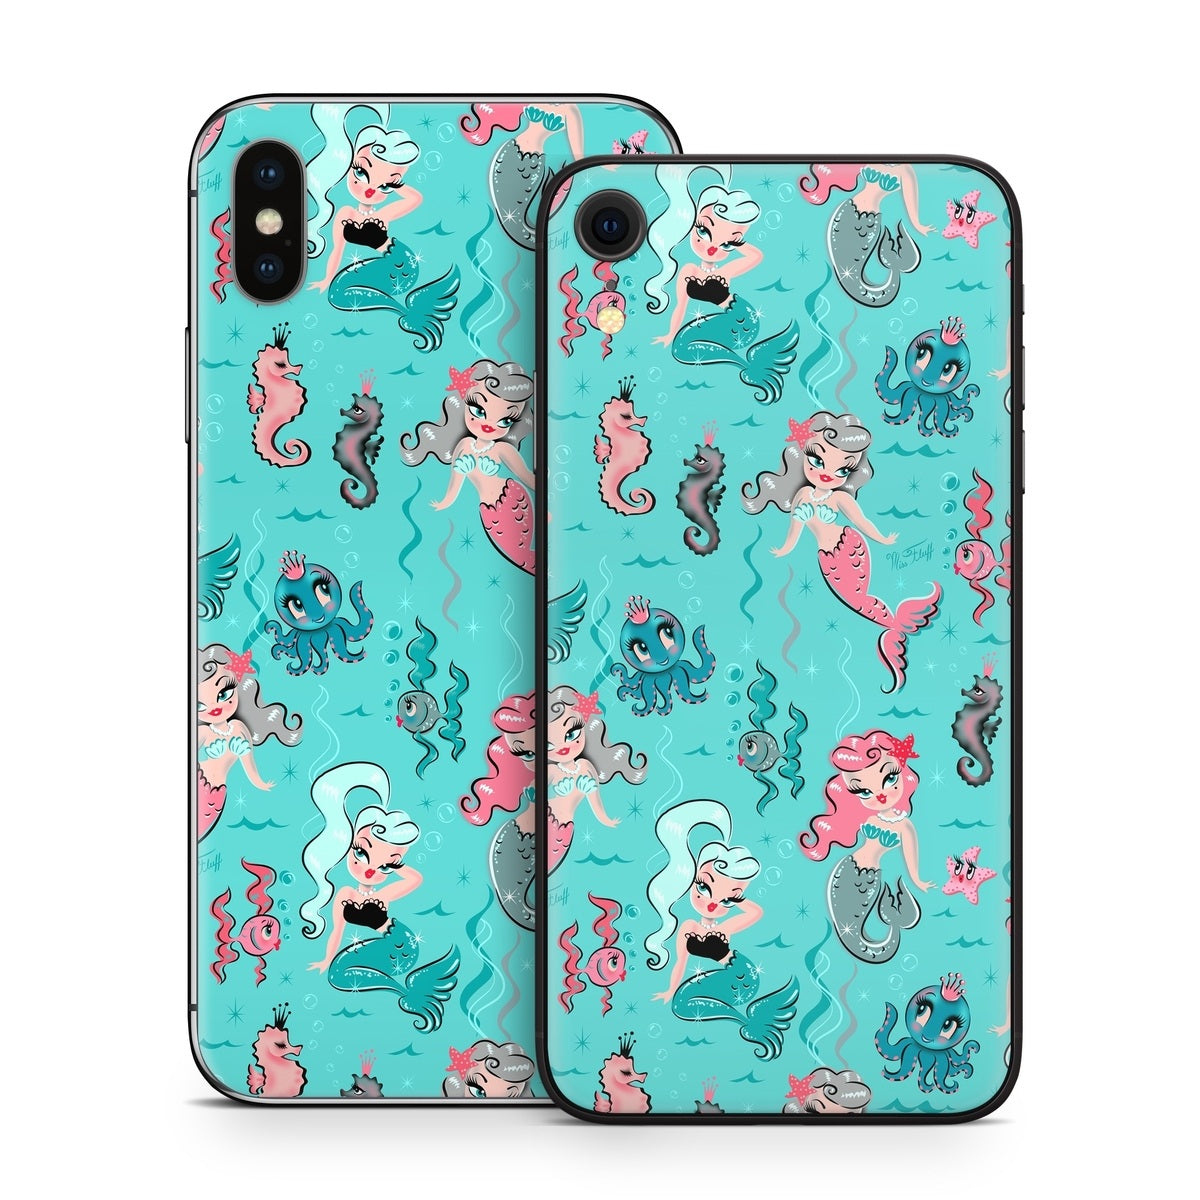 Babydoll Mermaids - Apple iPhone X Skin